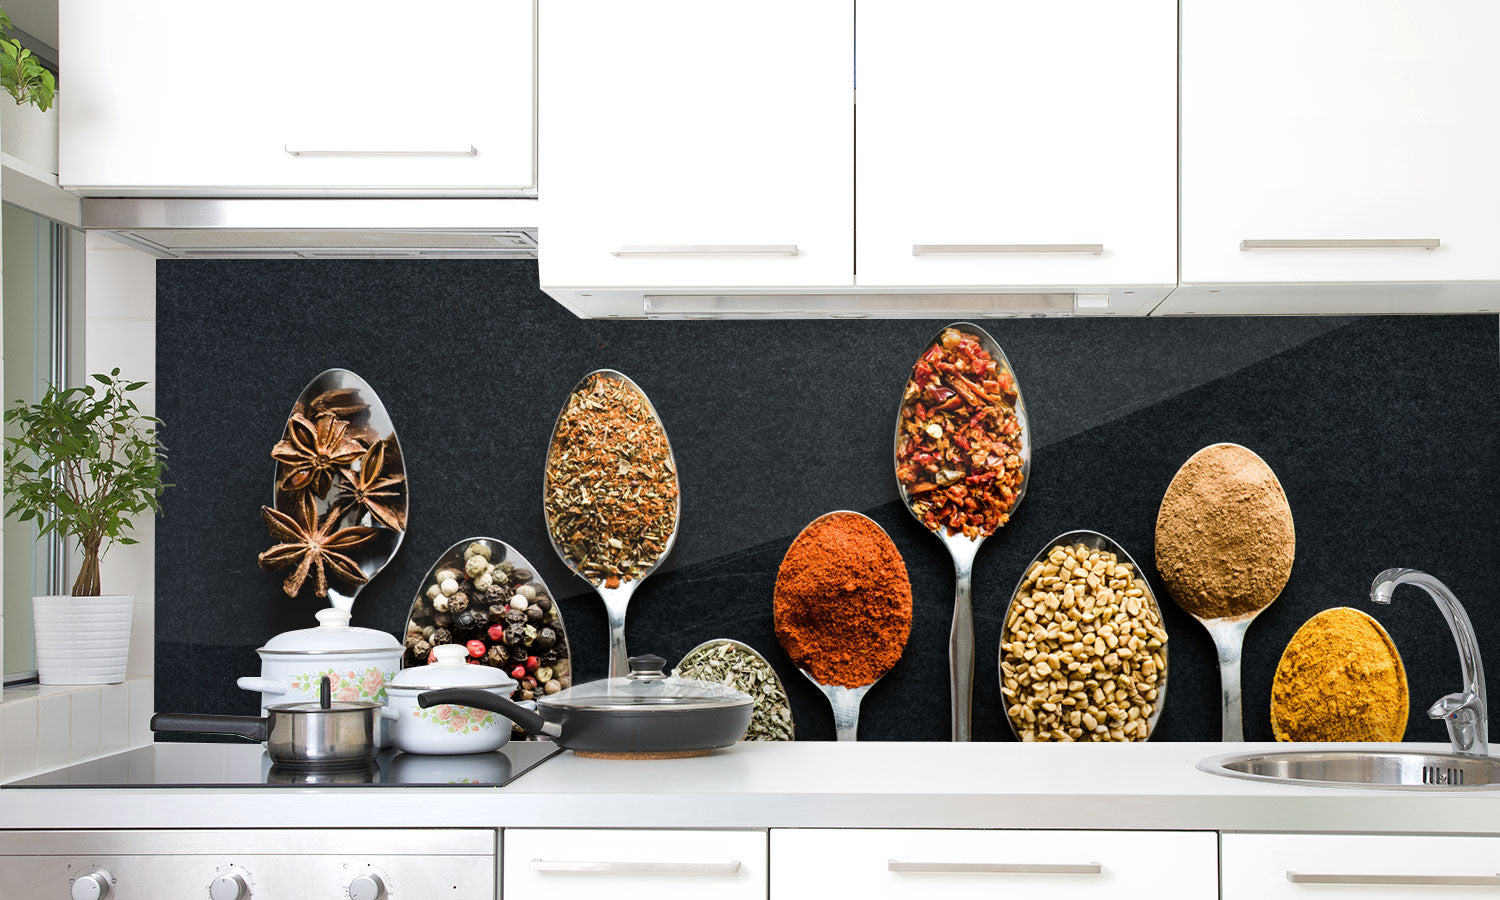 Paneli za kuhinje Herbs in metal spoons -  Stakleni / PVC ploče / Pleksiglas -  sa printom za kuhinju, Zidne obloge PKU186